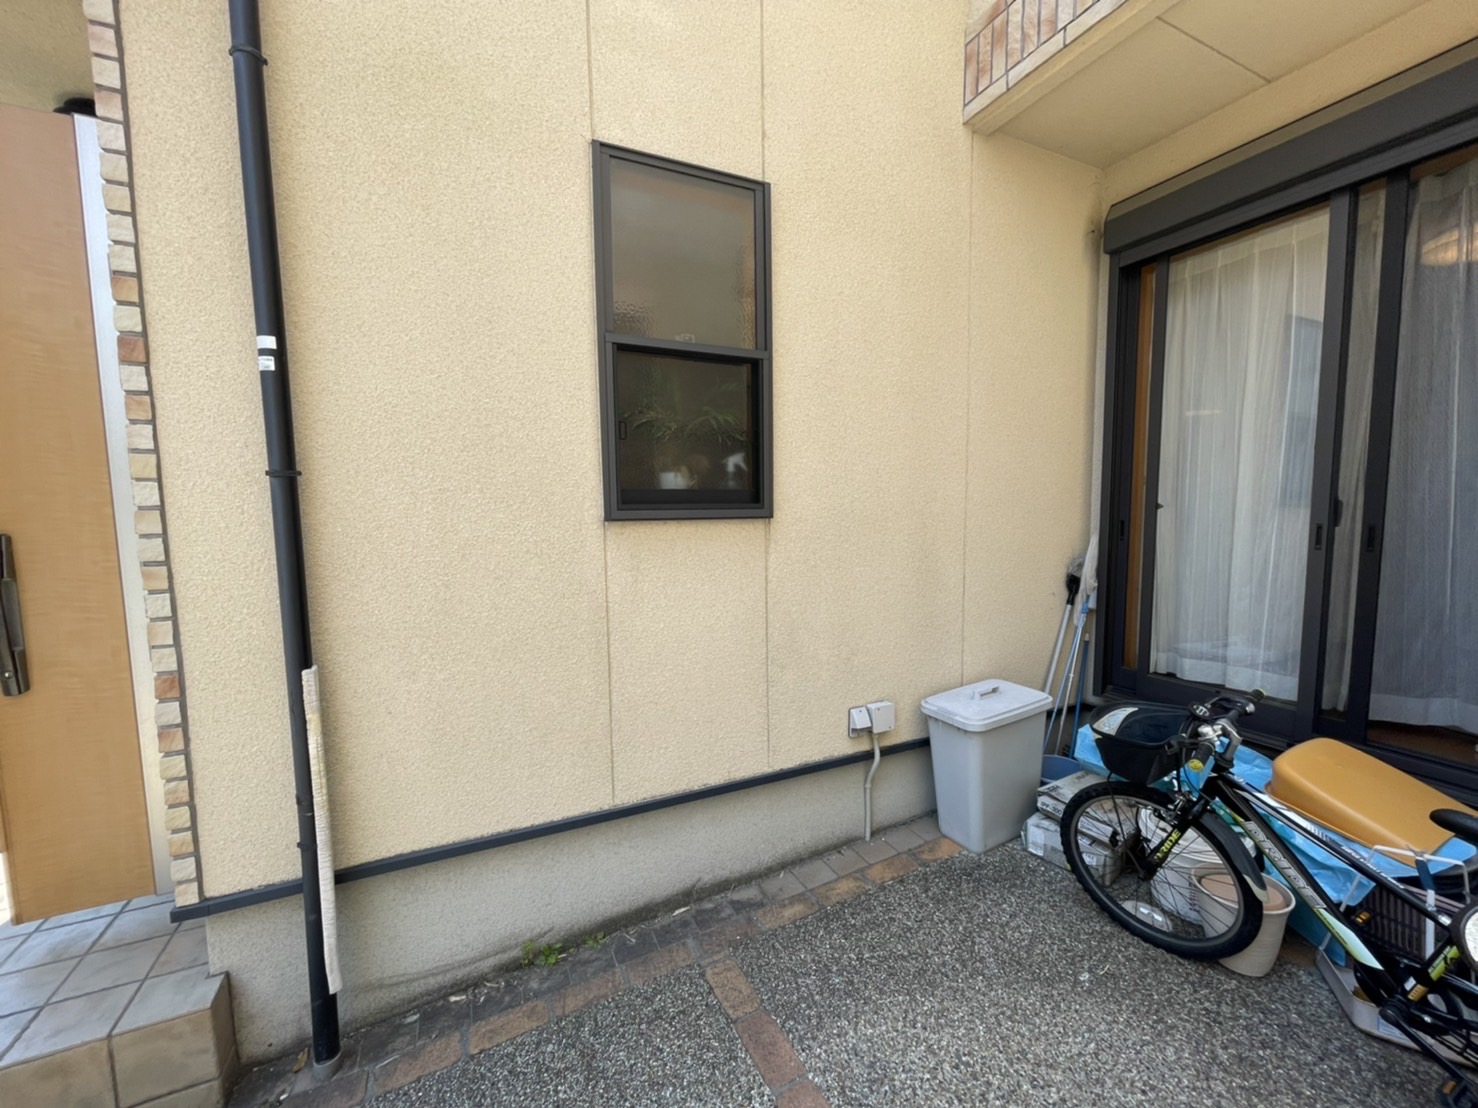 京都市西京区のS様邸EV自動車専用コンセント電気工事を行いました。